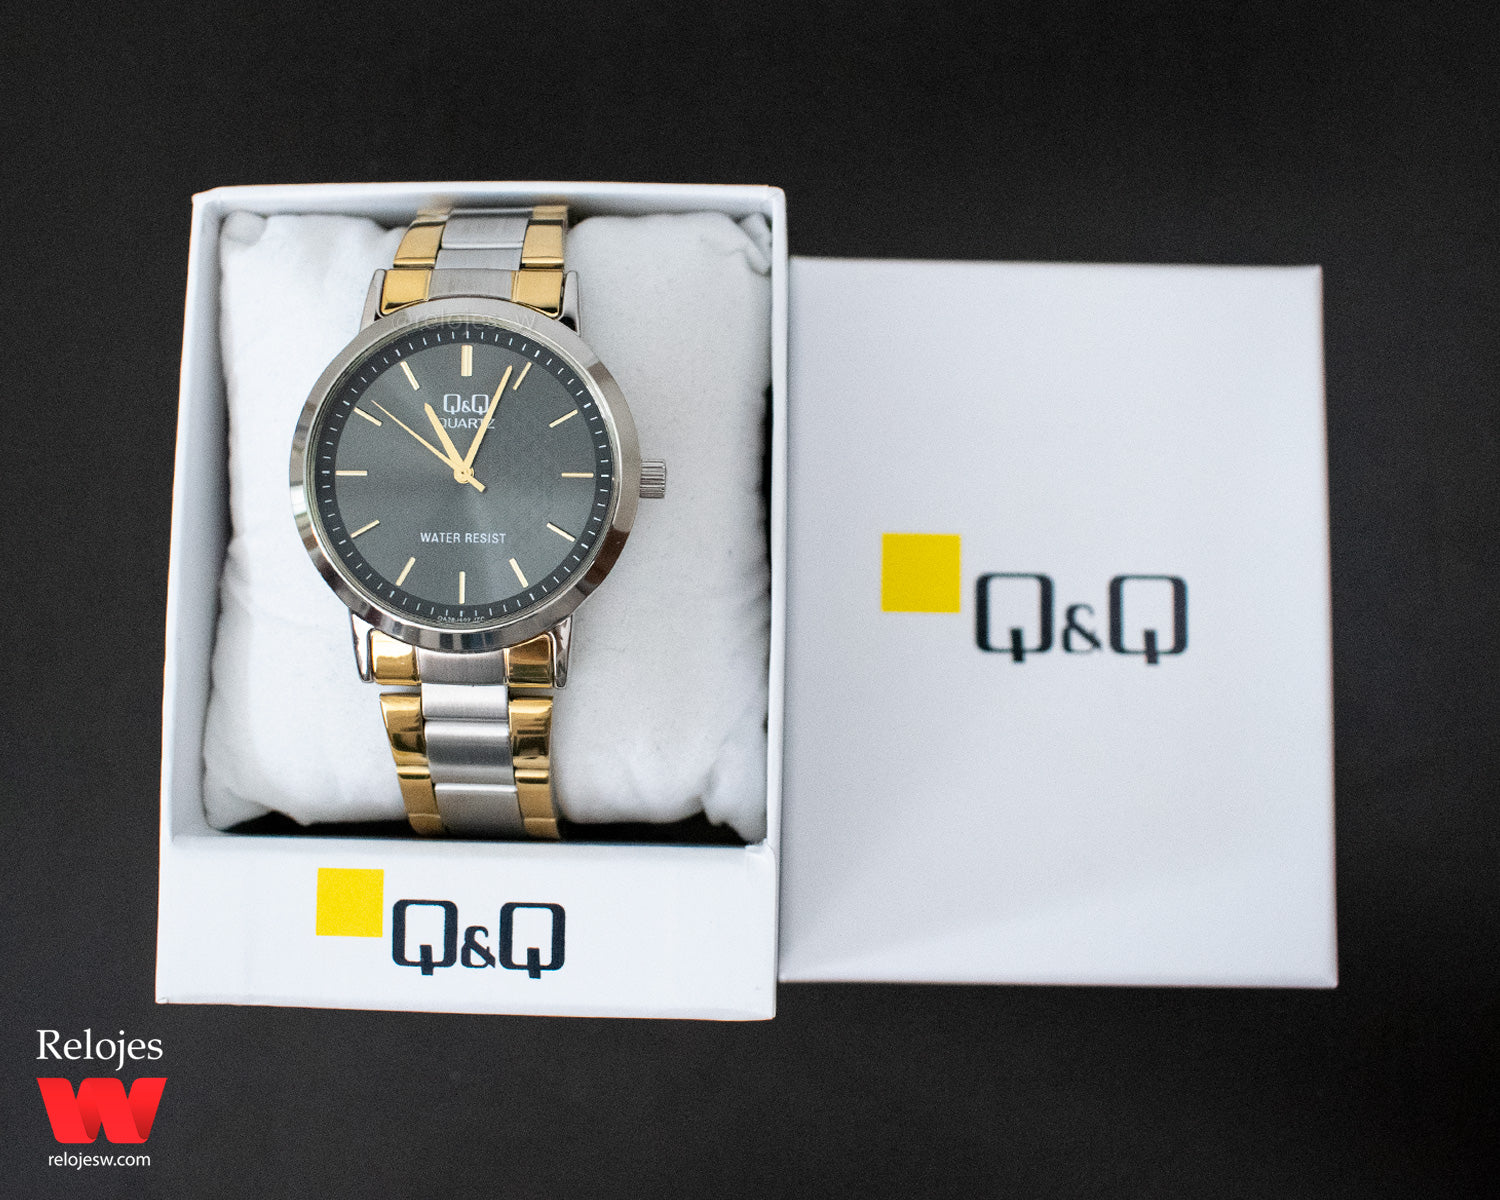 T&ME - Reloj mujer dorado / plateado diferente diseños y